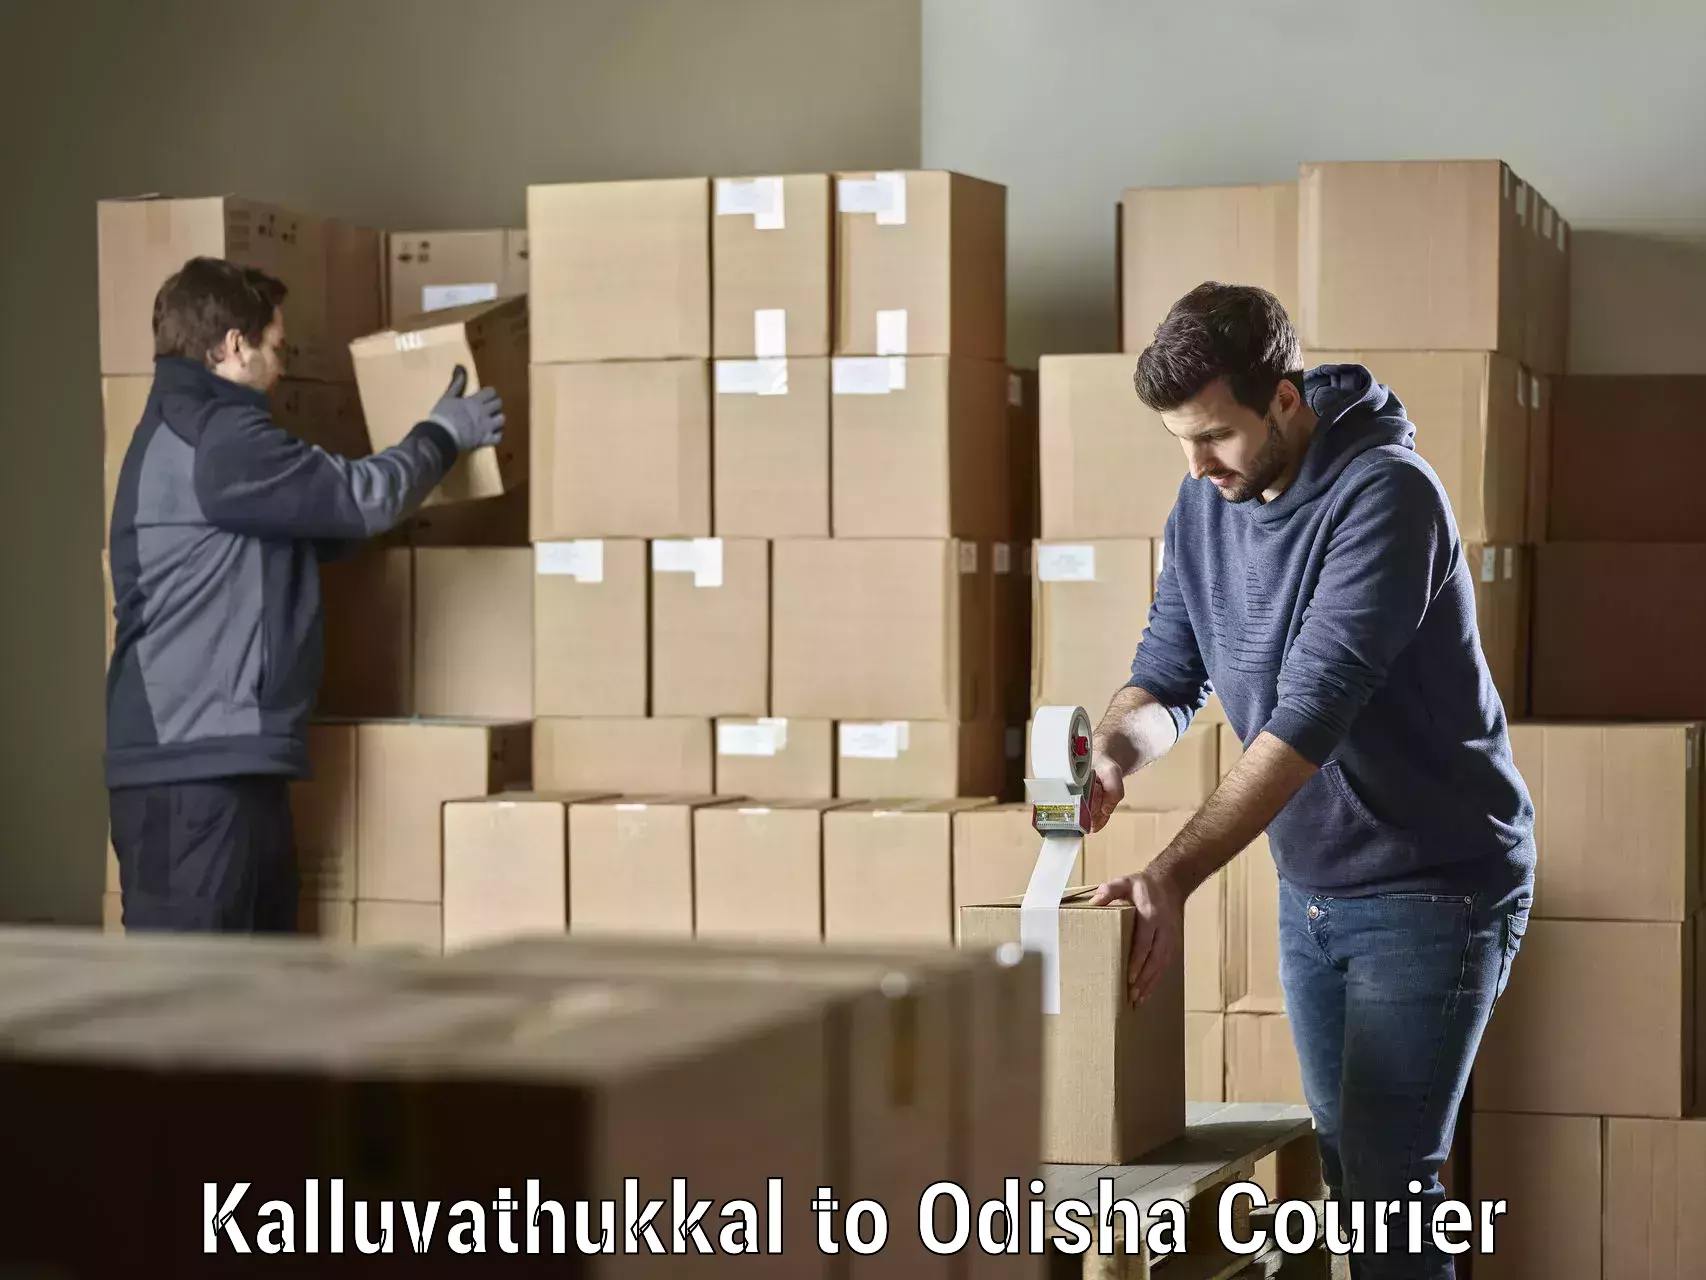 Professional courier handling Kalluvathukkal to Odisha